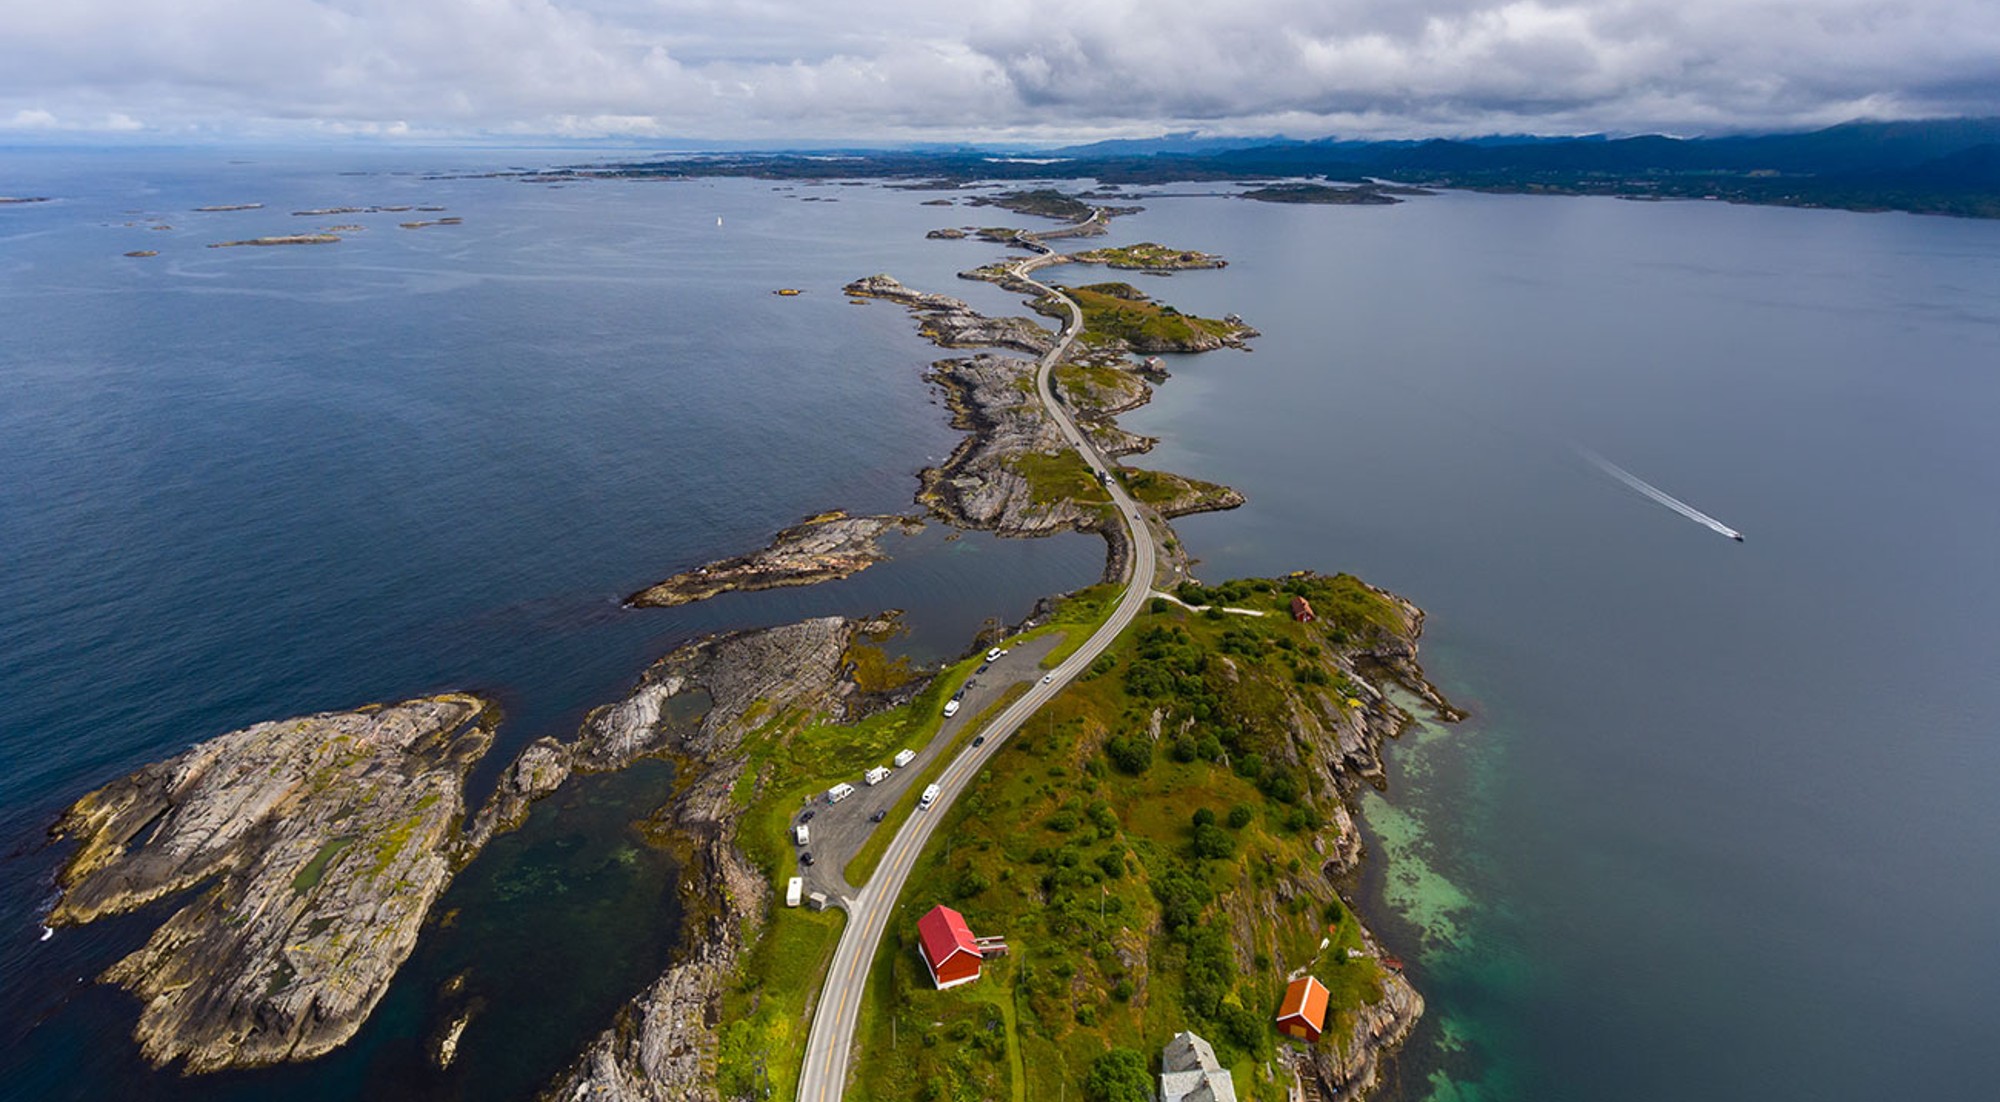 Las 10 carreteras más espectaculares del mundo